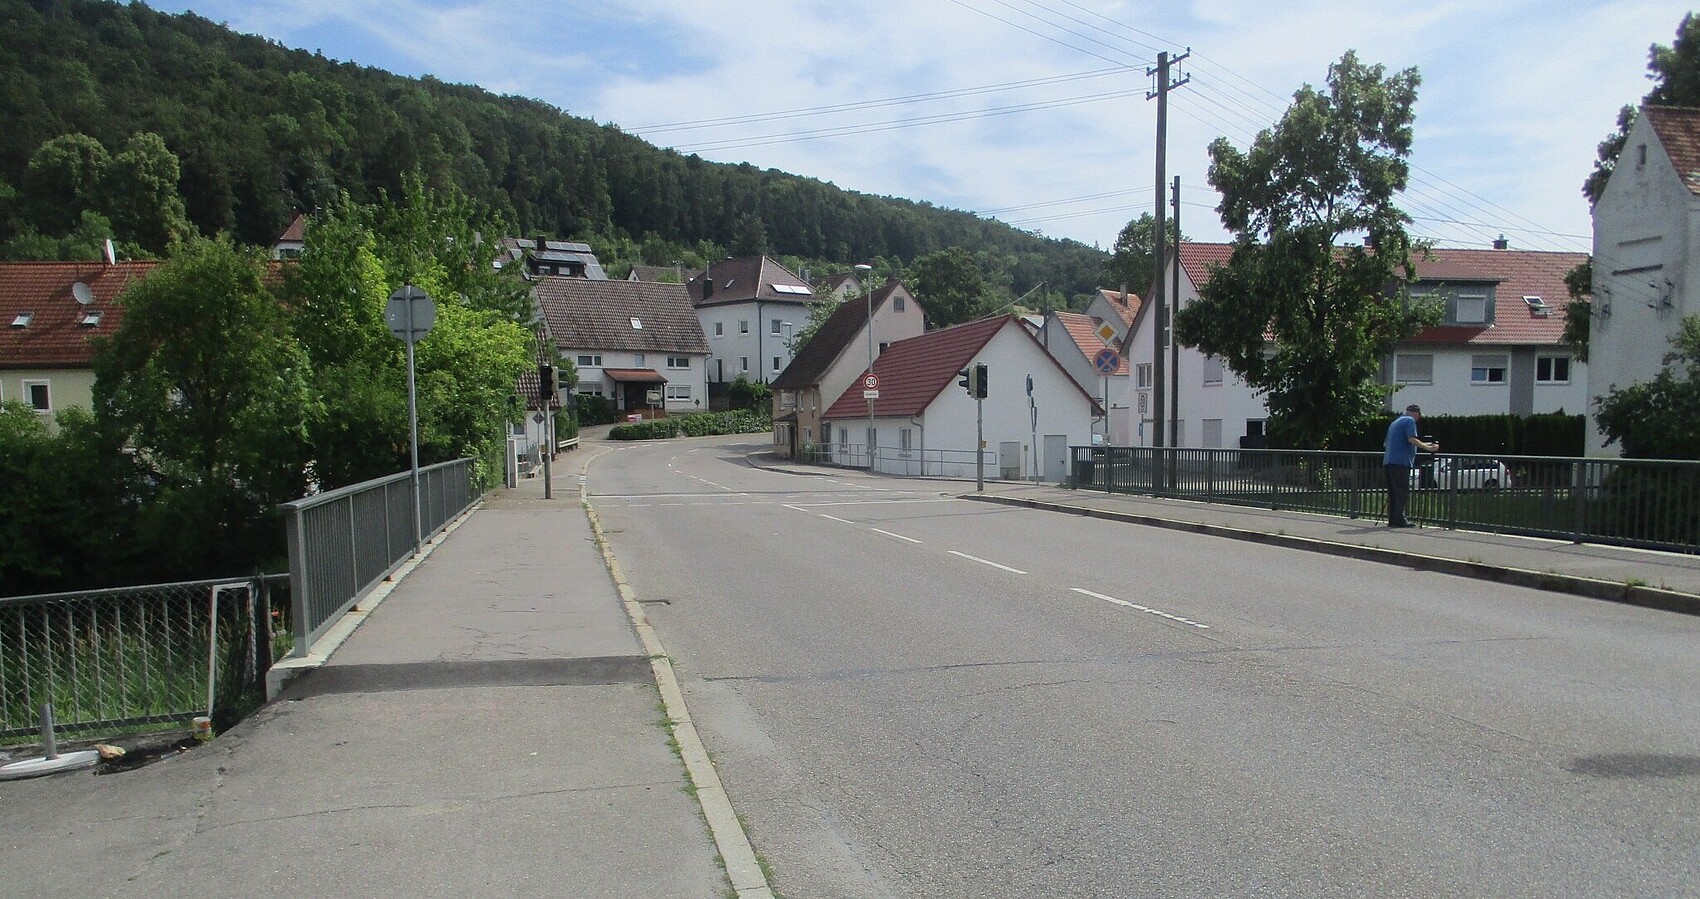 Das Foto zeigt die Ortsdurchfahrt von Gerhausen; mehrere Häuser und eine Brücke; im Hintergrund Wald